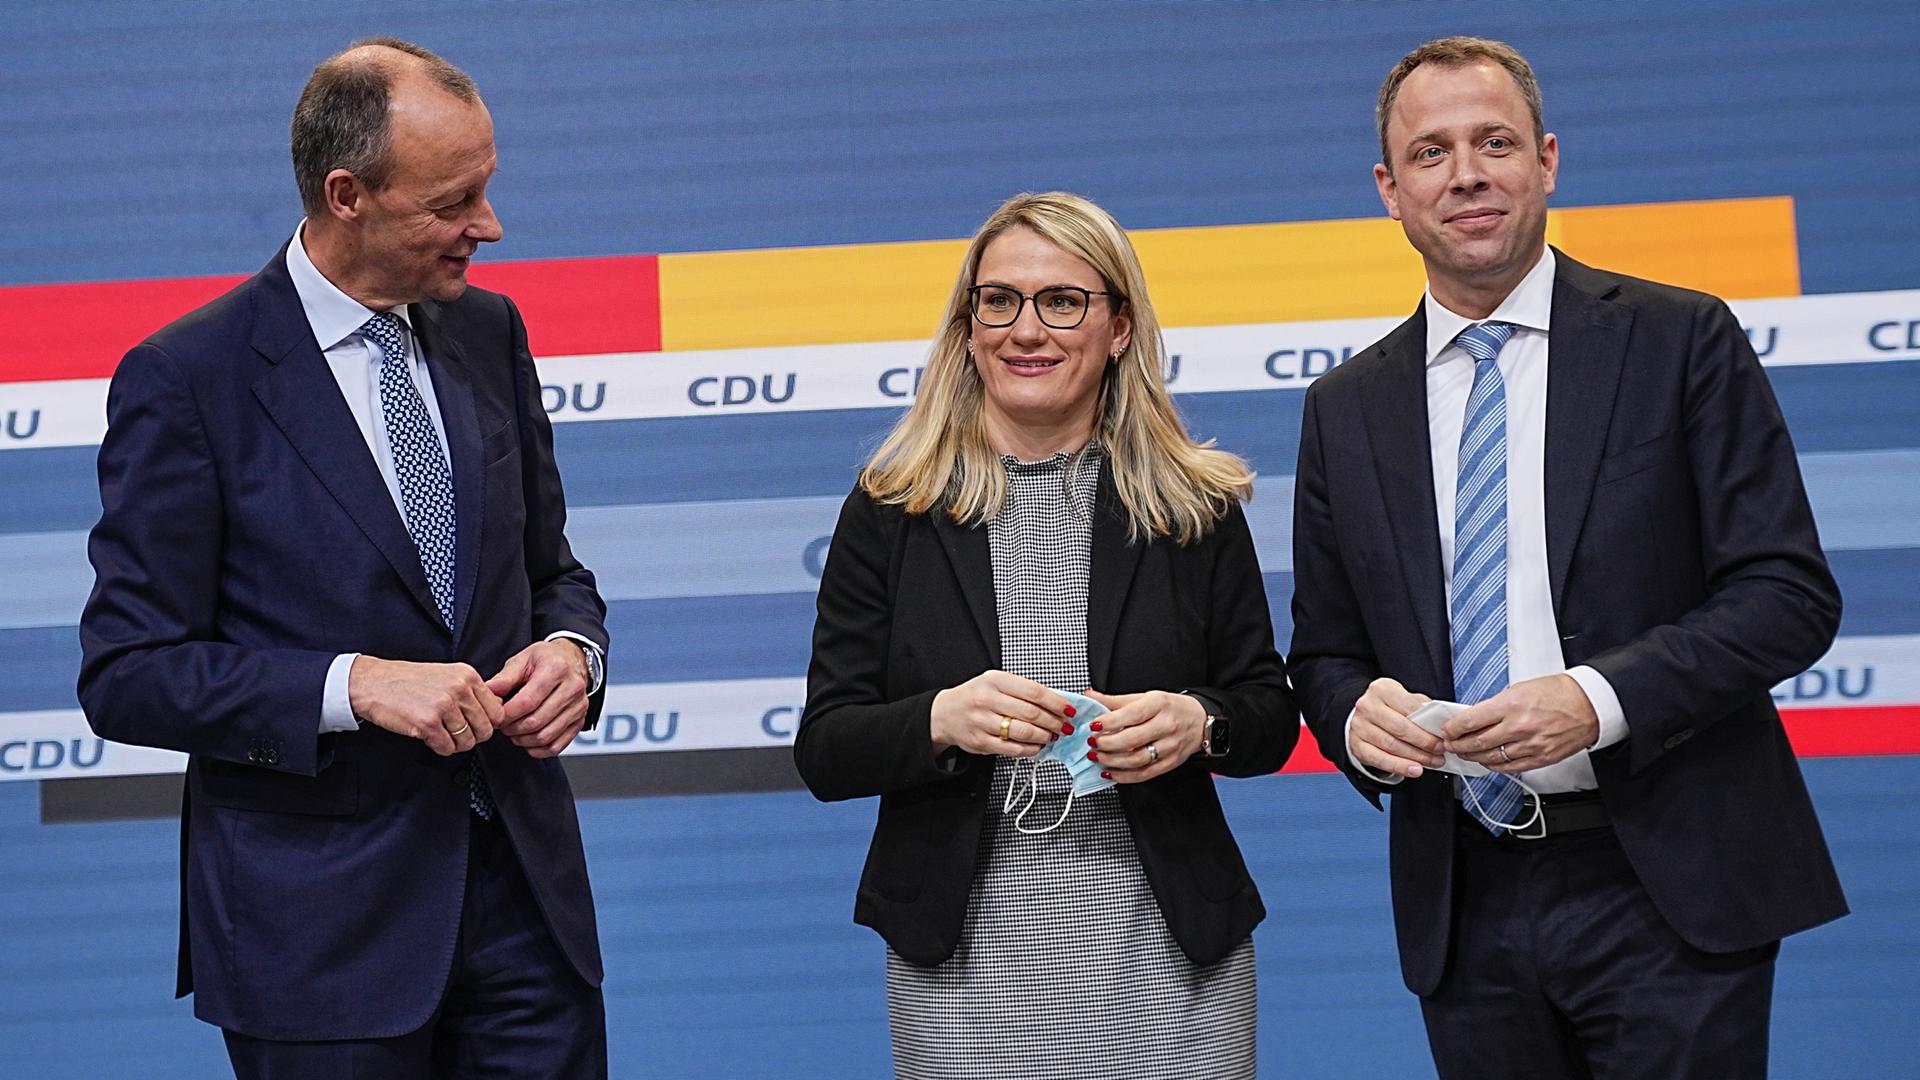 Friedrich Merz (CDU, l) steht neben Christina Stumpp, Kandidatin für das Amt der stellvertretenden CDU-Generalsekretärin und Mario Czaja, Kandidat für das Amt des CDU-Generalsekretärs, nach der Bekanntgabe der Ergebnisse der CDU Mitgliederbefragung. Merz soll nach dem Willen der CDU-Mitglieder neuer Parteivorsitzender werden. Auf einem Parteitag der CDU im Januar 2022 soll der neue Bundesvorsitzende von den Delegierten gewählt werden.